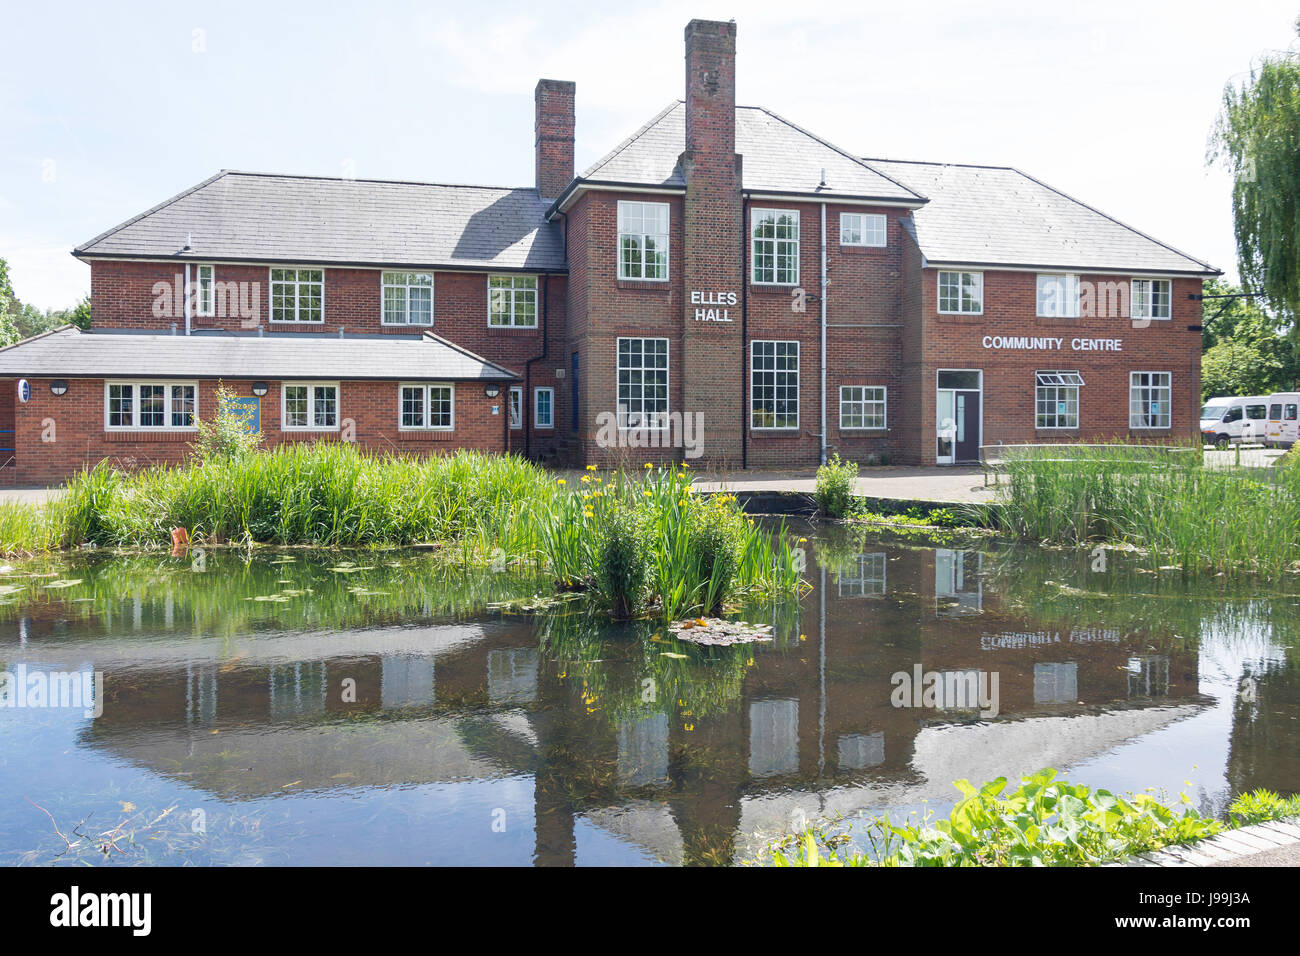 Elles Hall Community Centre Civique, jardins, Farnborough, Hampshire, Angleterre, Royaume-Uni Banque D'Images